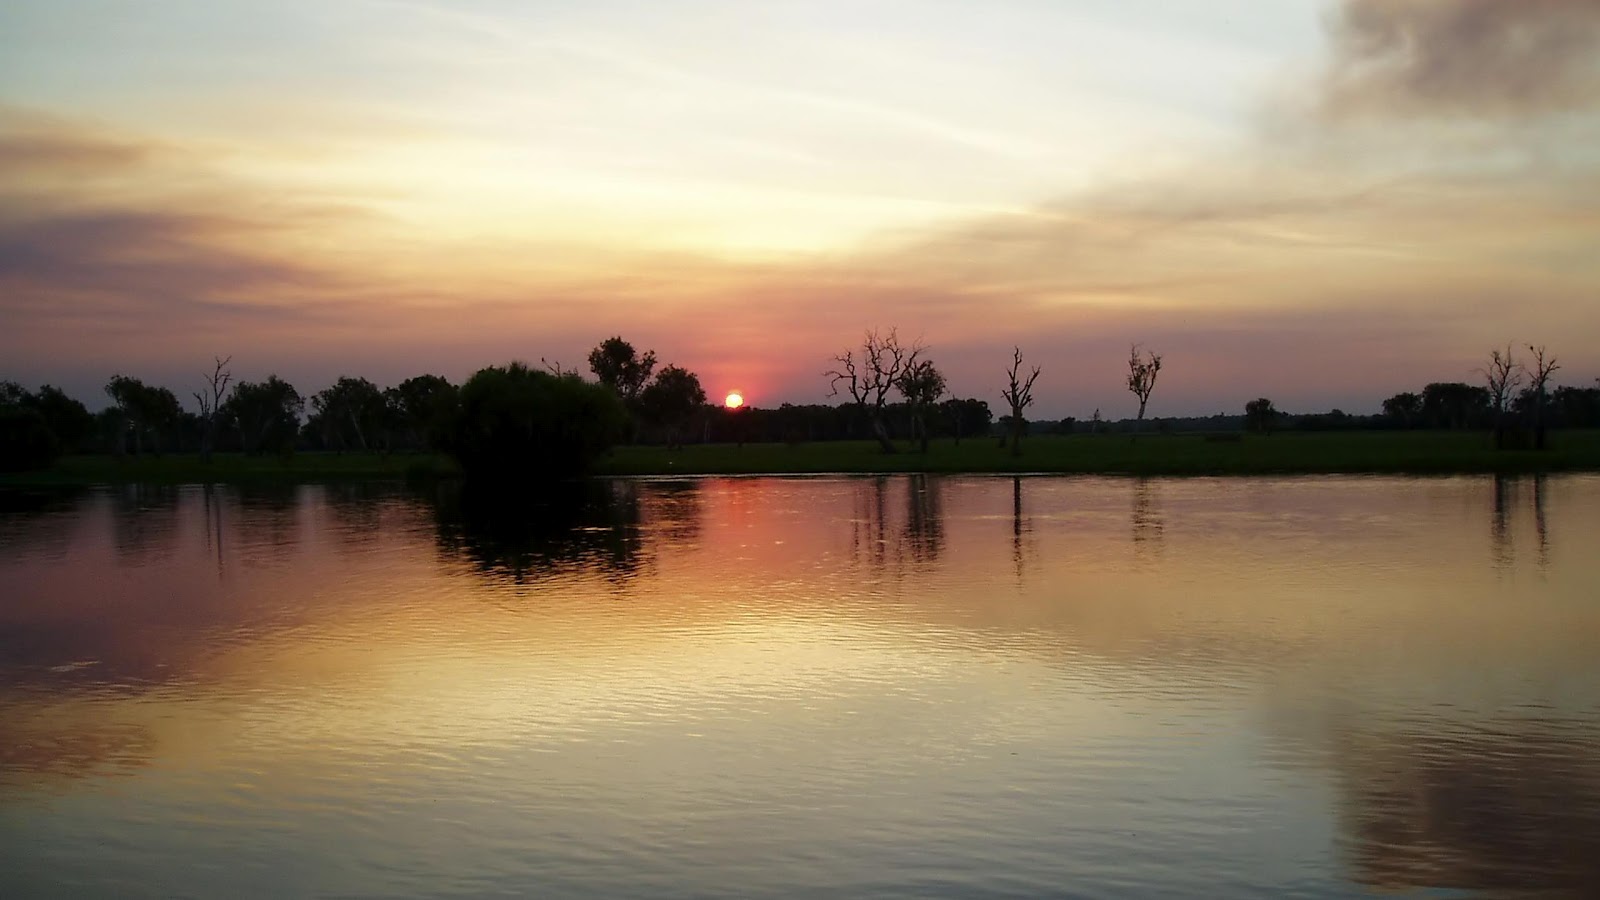 http://4.bp.blogspot.com/-zui2BxFZYYA/T9El7SoVgeI/AAAAAAAAAQw/fynNNkY5AsU/s1600/village-pond-sunset-hd-wallpaper.jpg